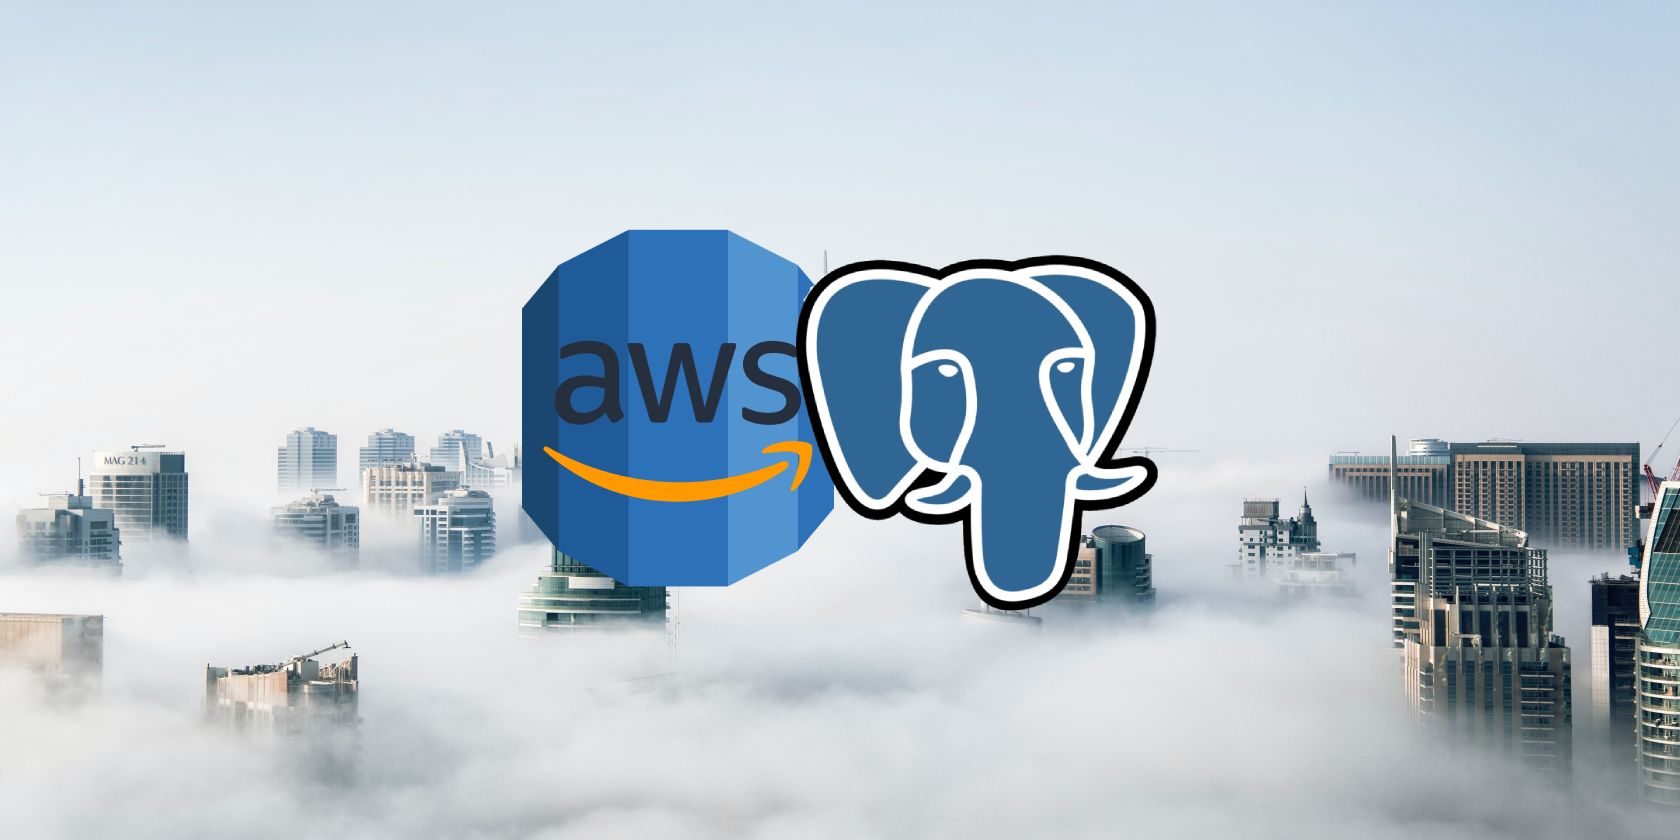 Logo AWS di sebelah logo gajah Postgres, melayang di atas awan dengan puncak gedung pencakar langit hampir tidak terlihat